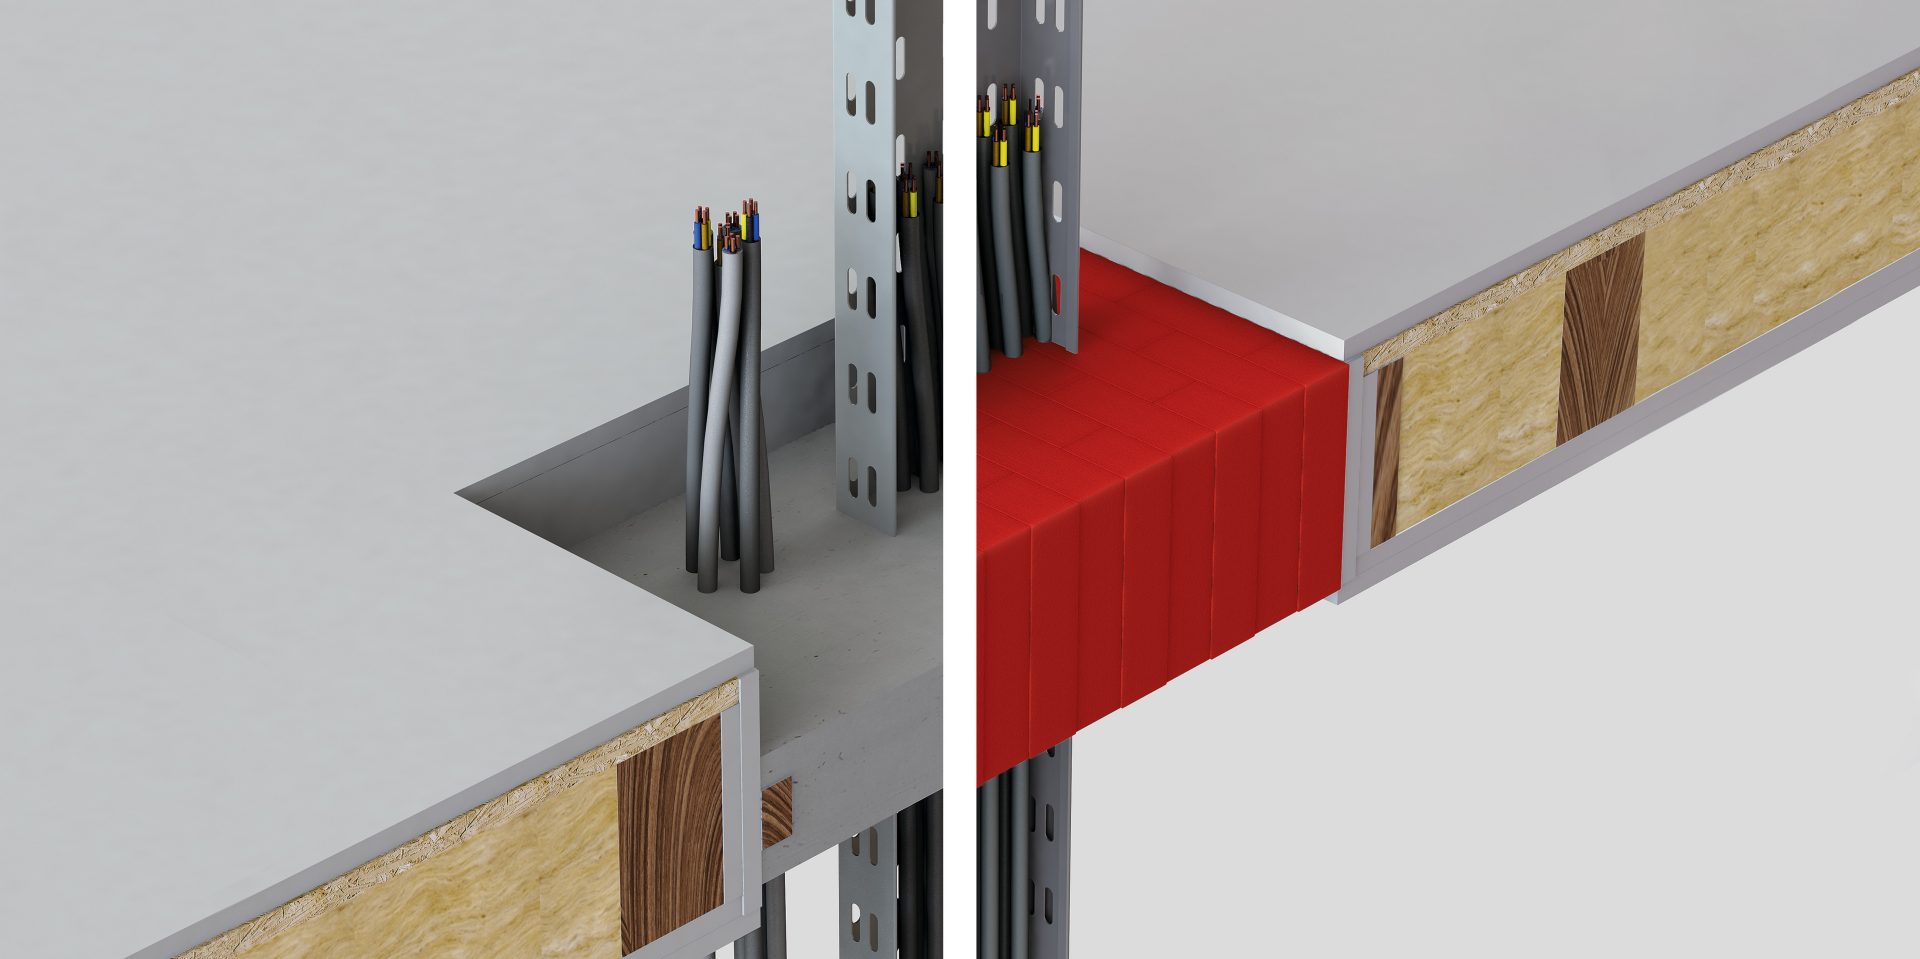 Comparação de uma solução de argamassa convencional (no lado esquerdo) e os blocos antifogo Hilti secos a vermelho (no lado direito) através de um chão de madeira